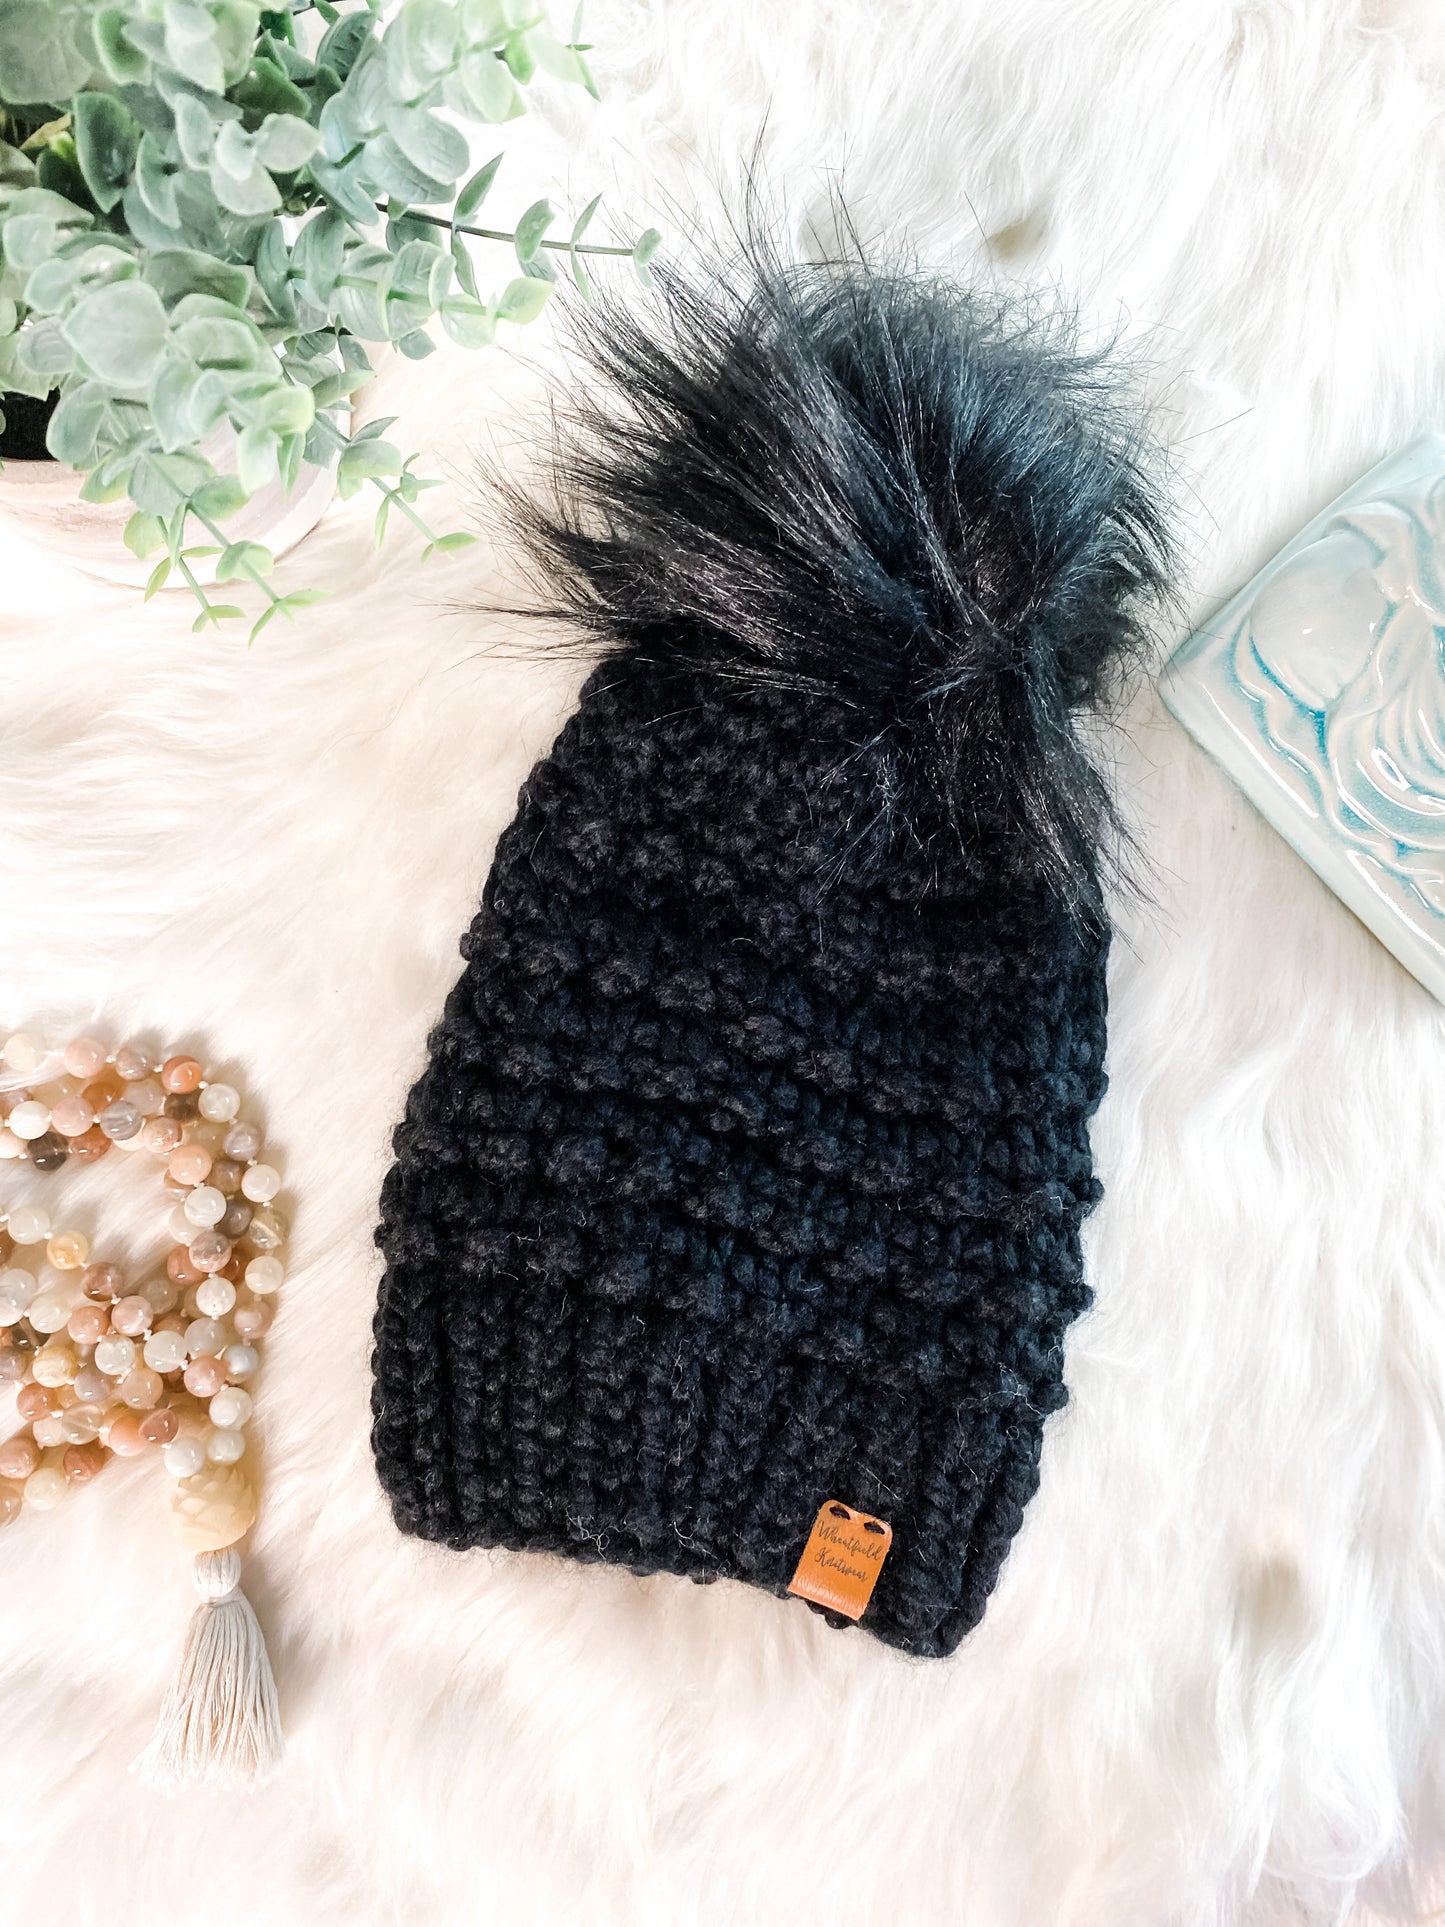 Women’s Winter Hat with Faux Fur Pom - Black